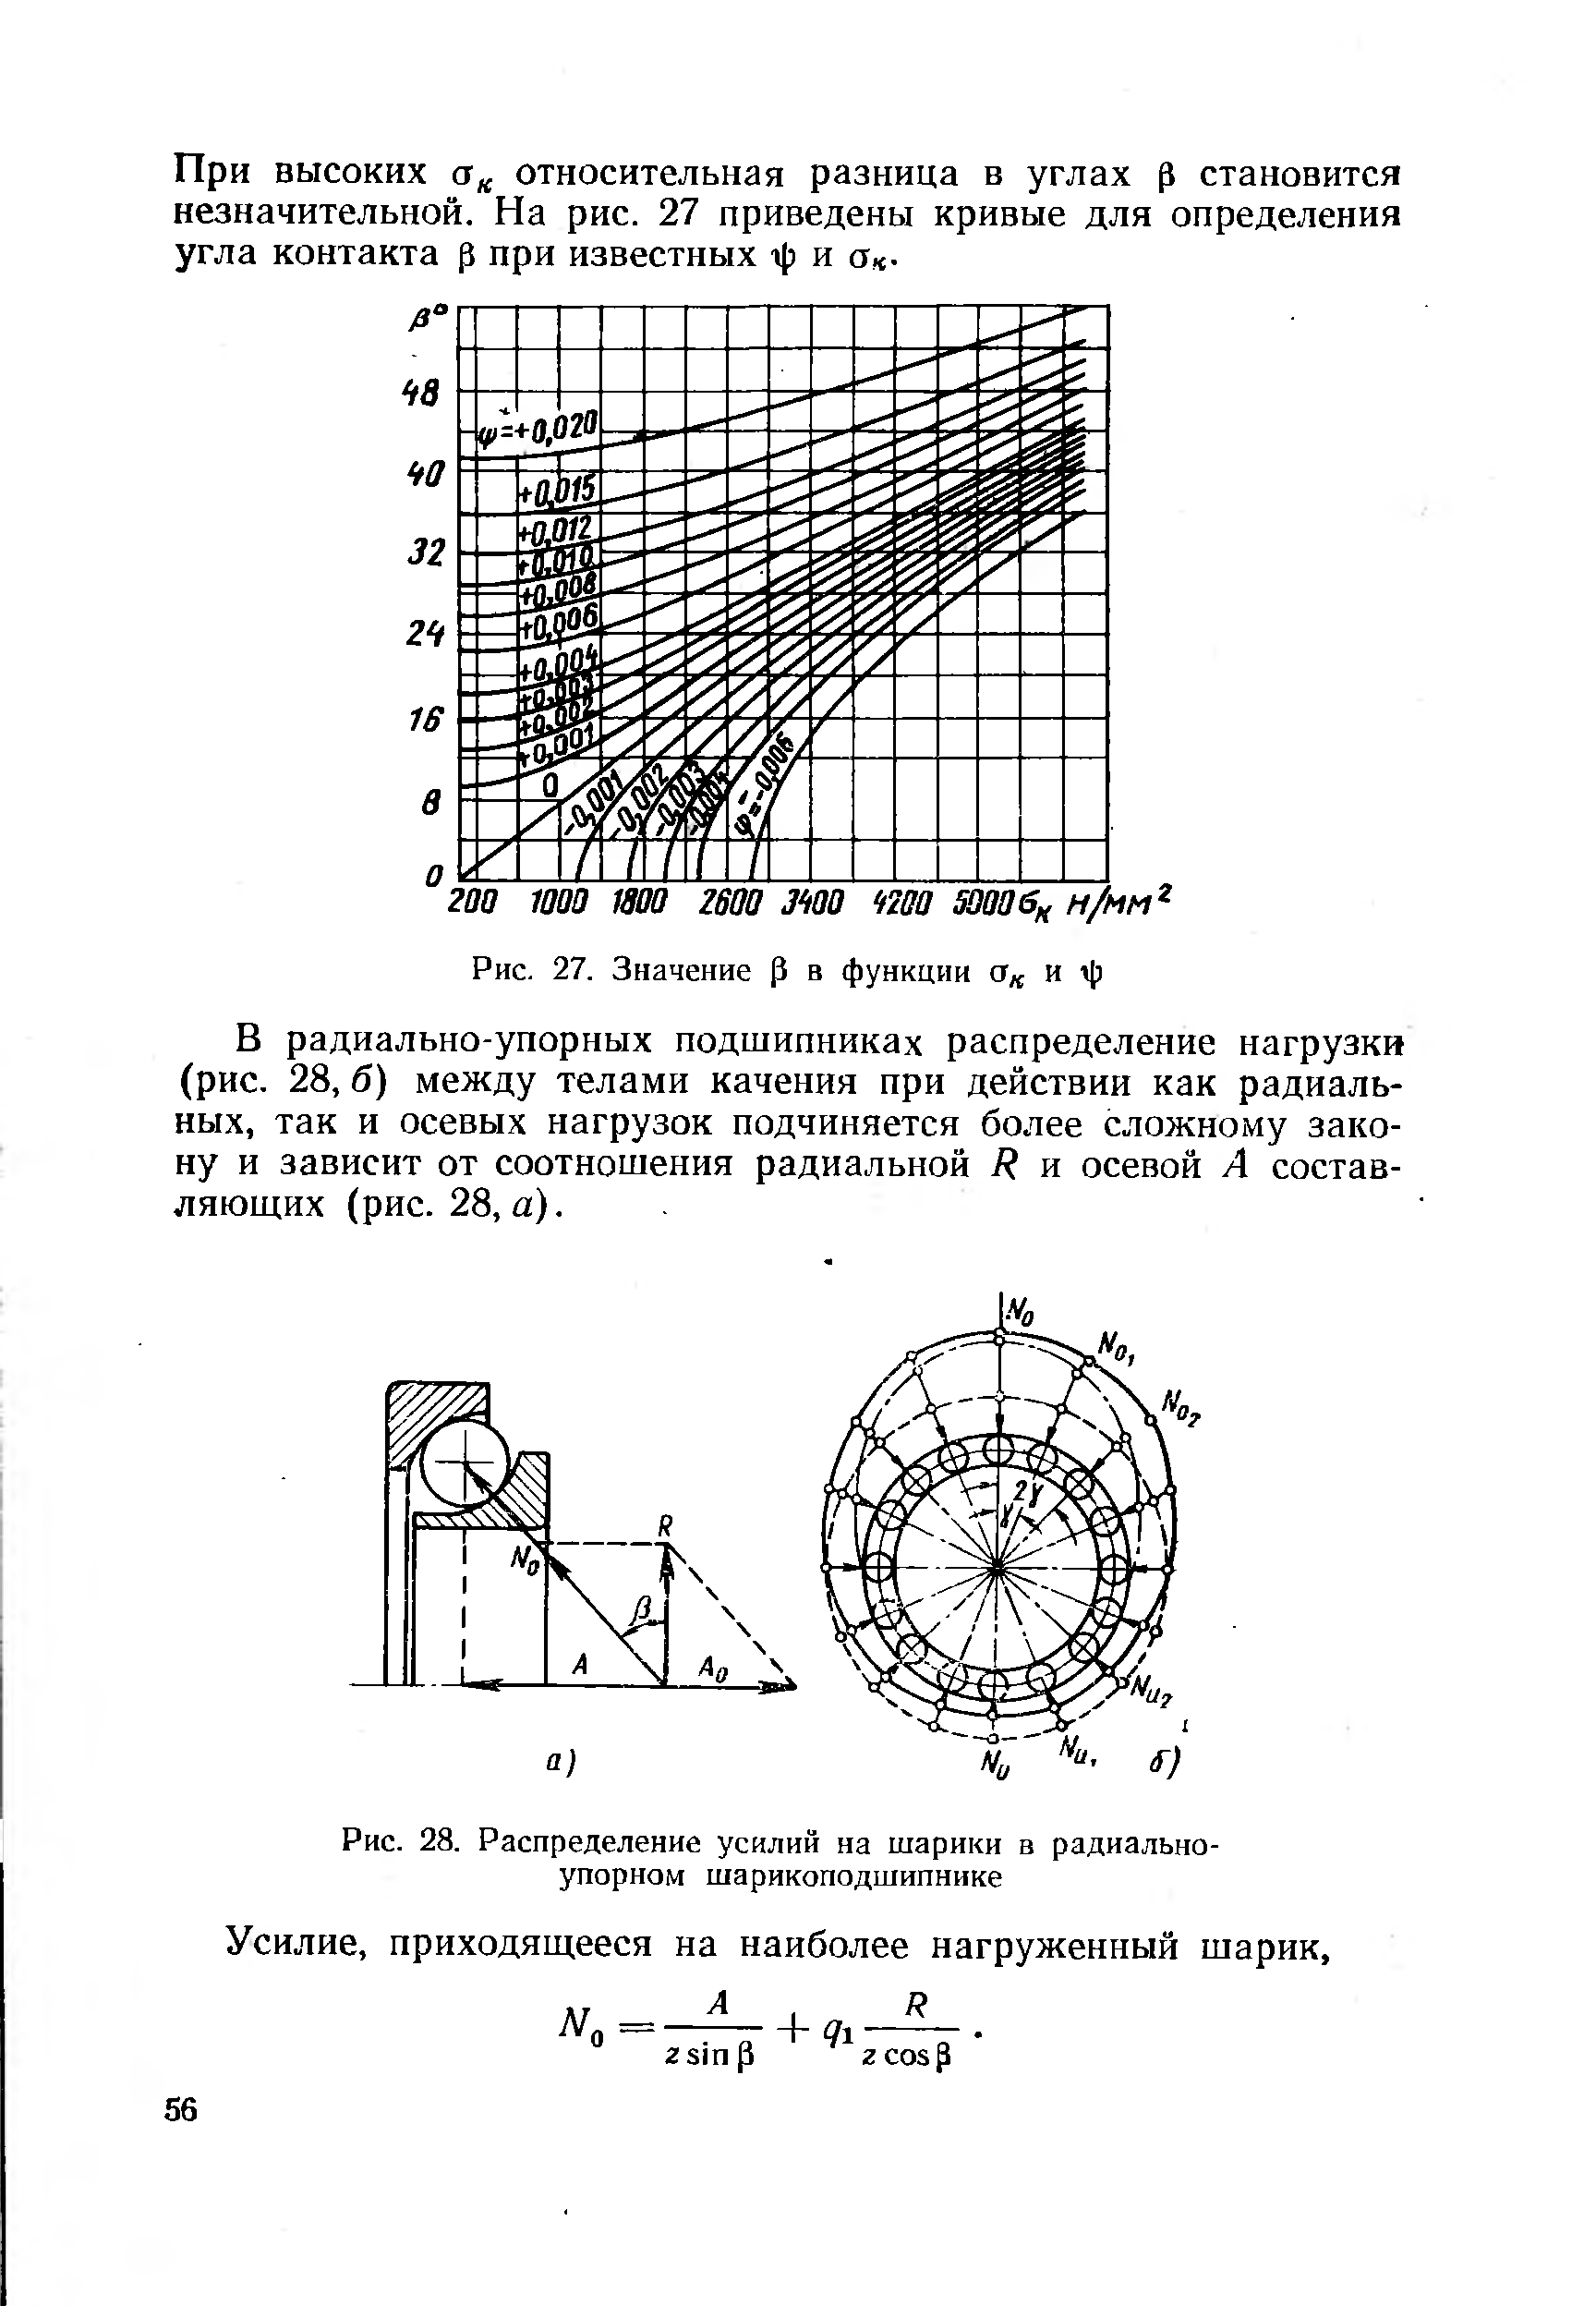 Рис. 28. Распределение усилий на шарики в радиальноупорном шарикоподшипнике
